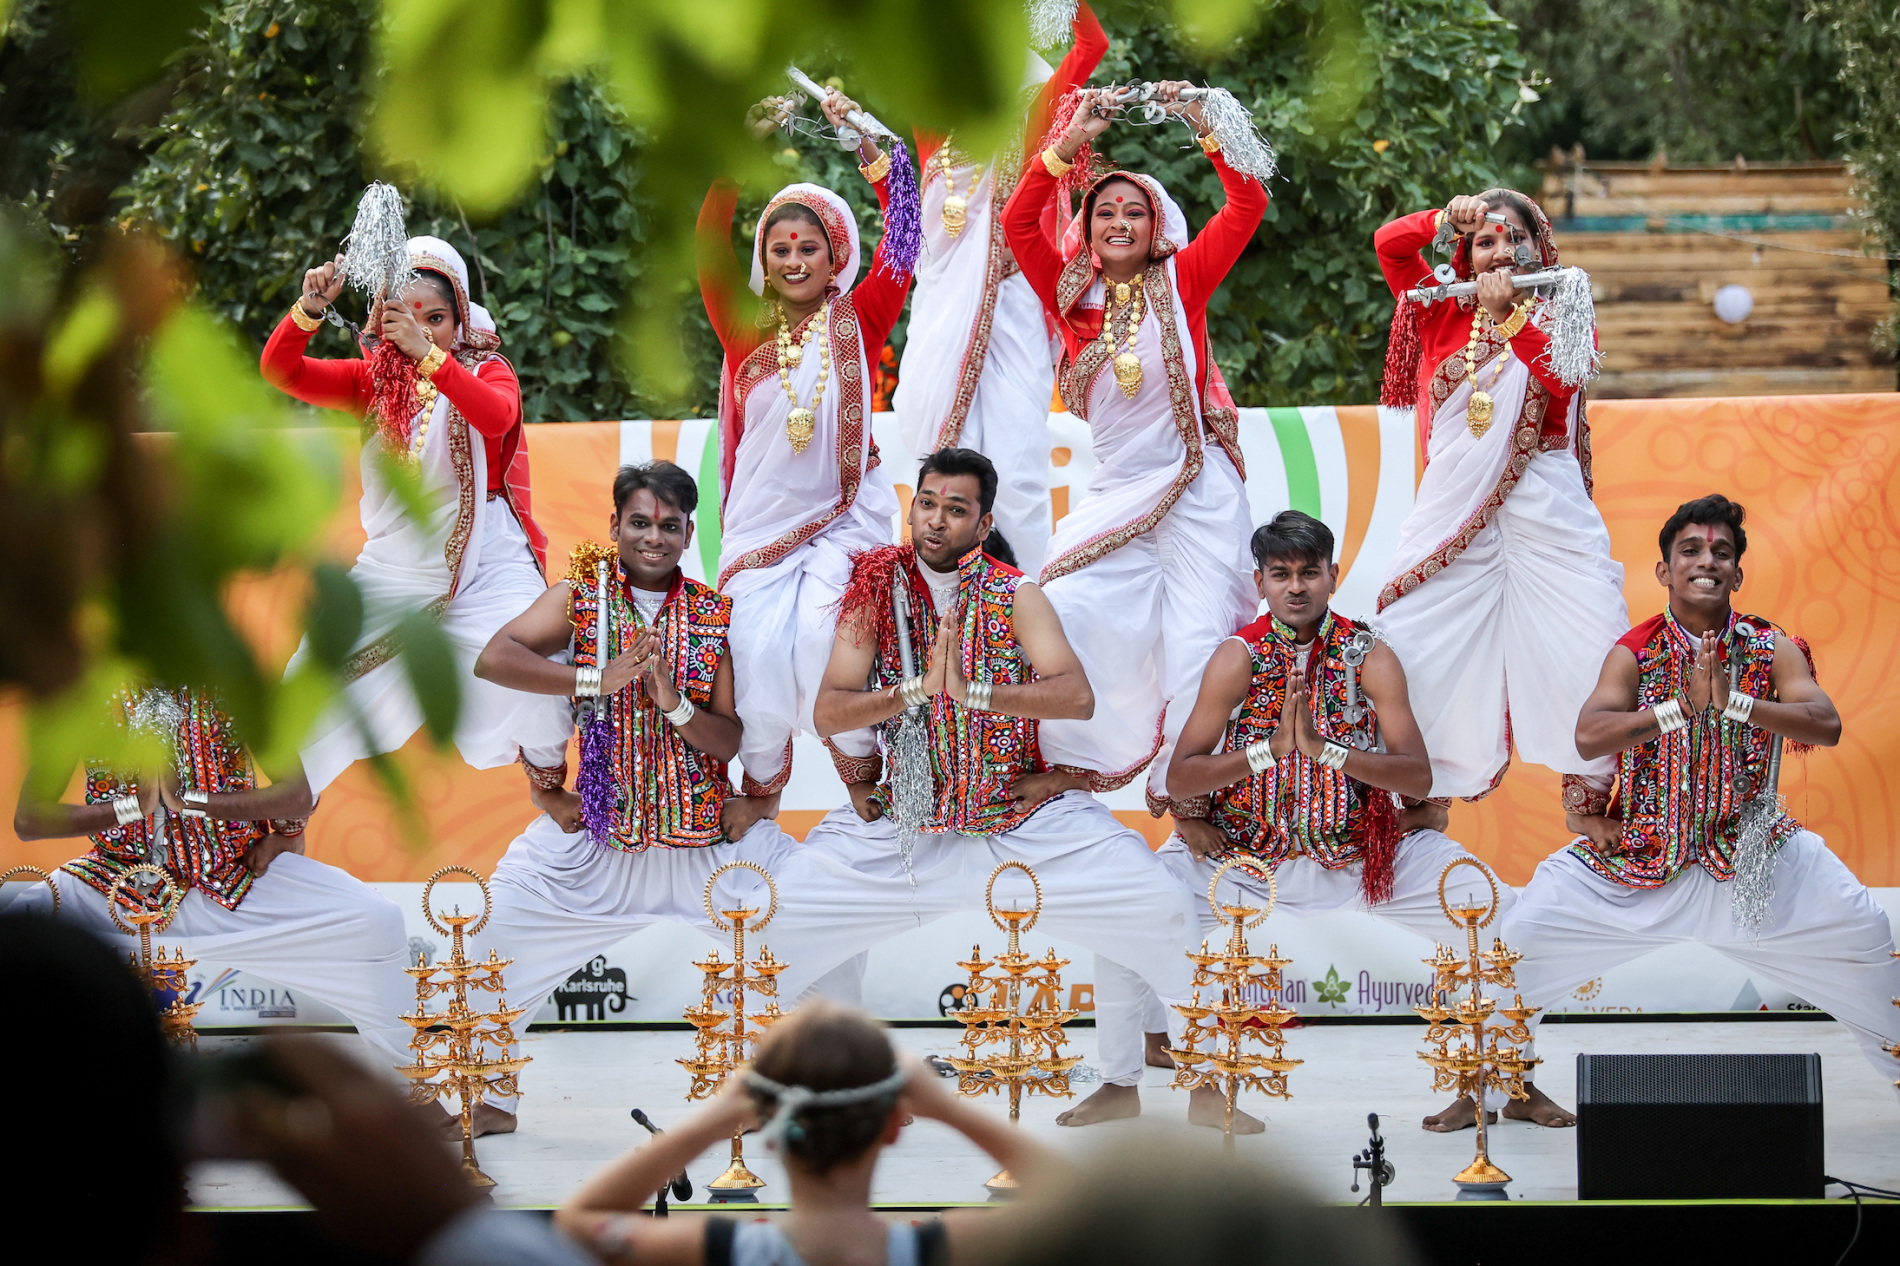 INDIA SUMMER DAYS 2023: Indische Kultur bei DAS FEST hautnah erleben